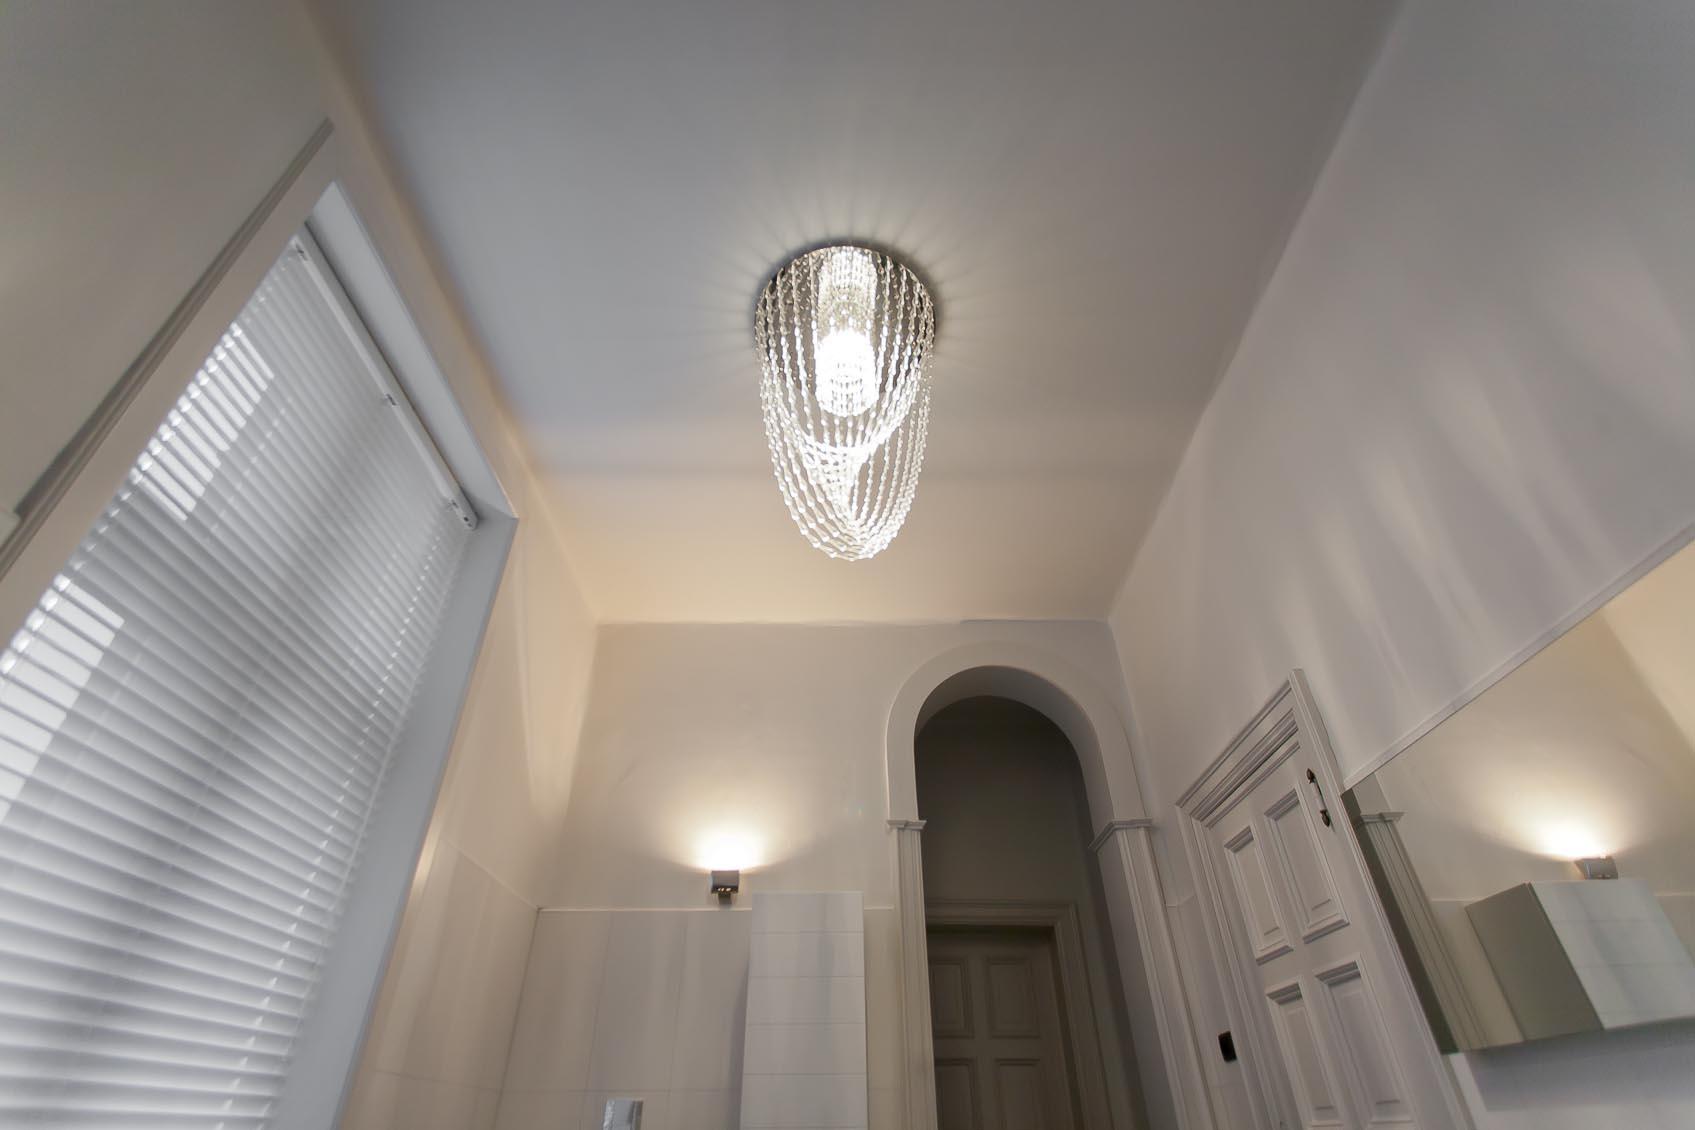 Viabizzuno stijlvol lichtarmatuur 'Gocce' werd geadviseerd in lichtconcept door Lichthuis Mol